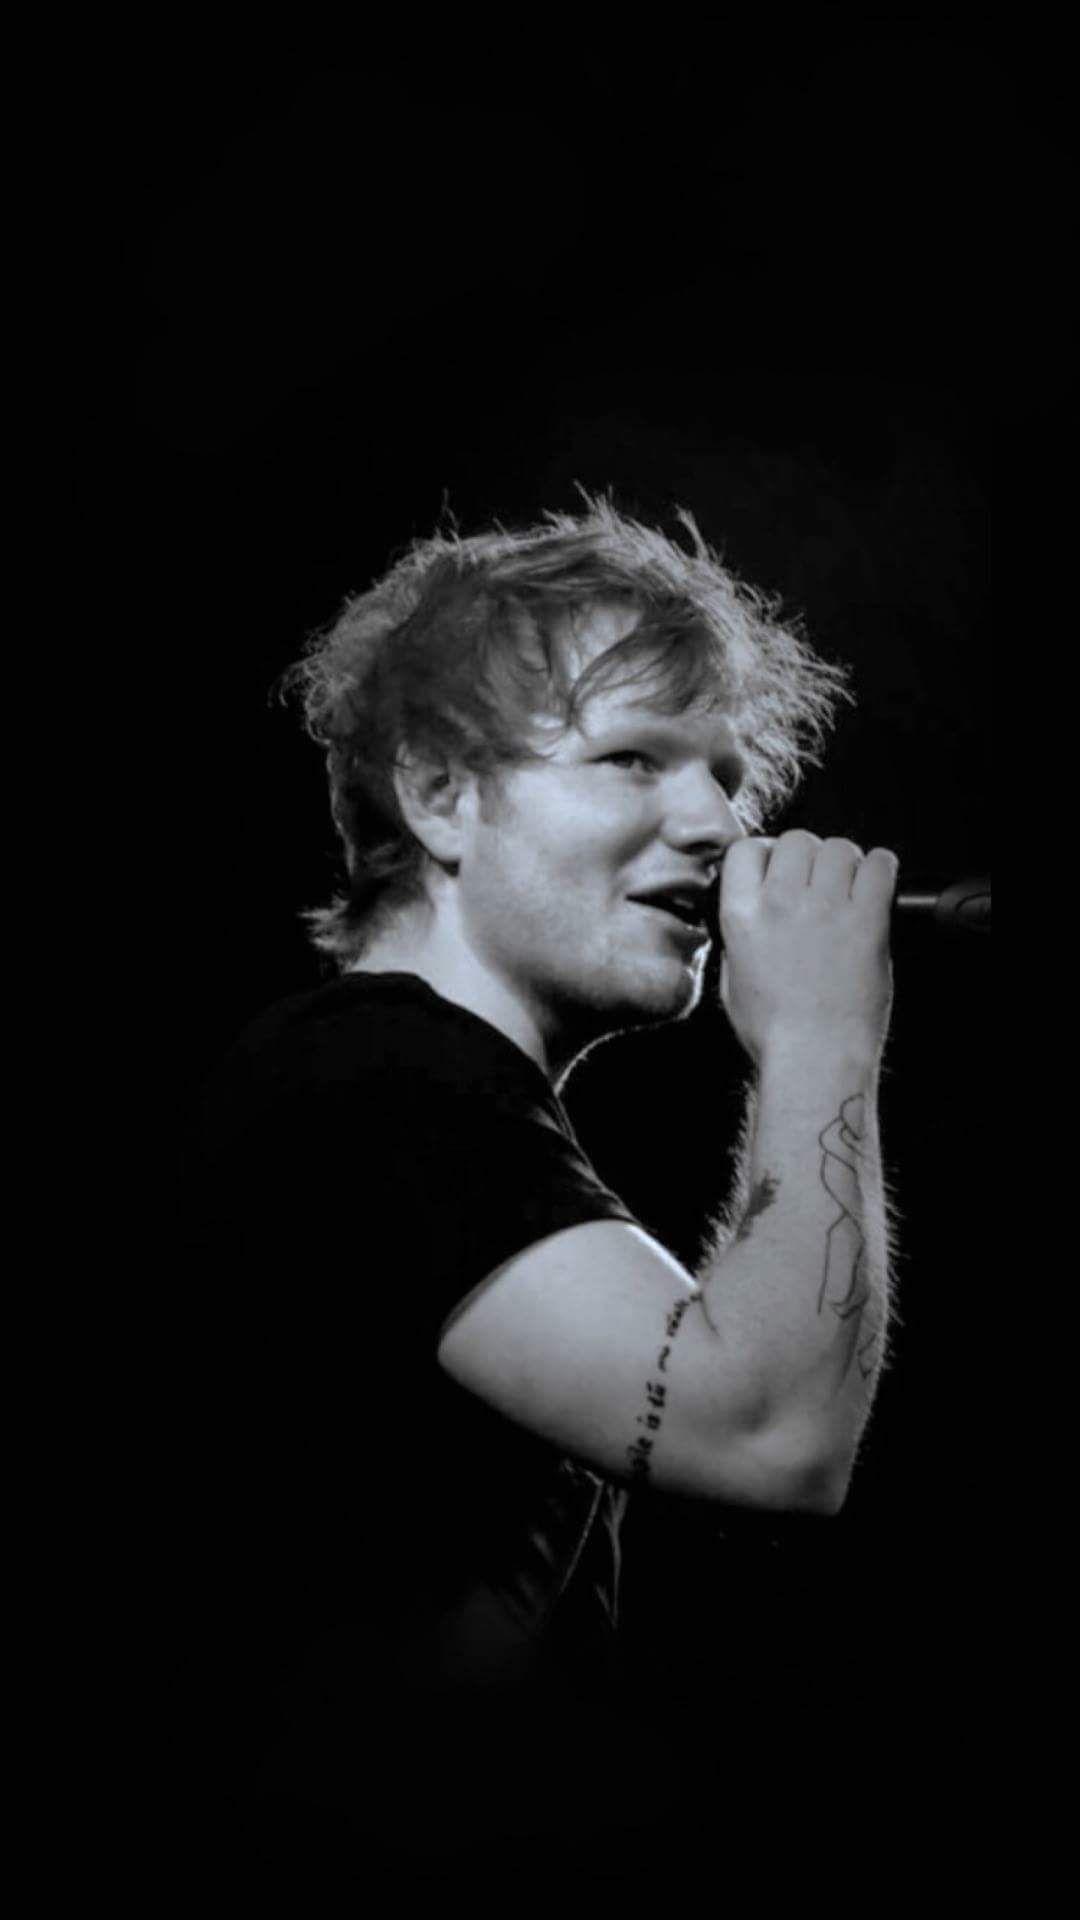 Ed Sheeran Wallpaper. Ed sheeran, Concert, Wallpaper